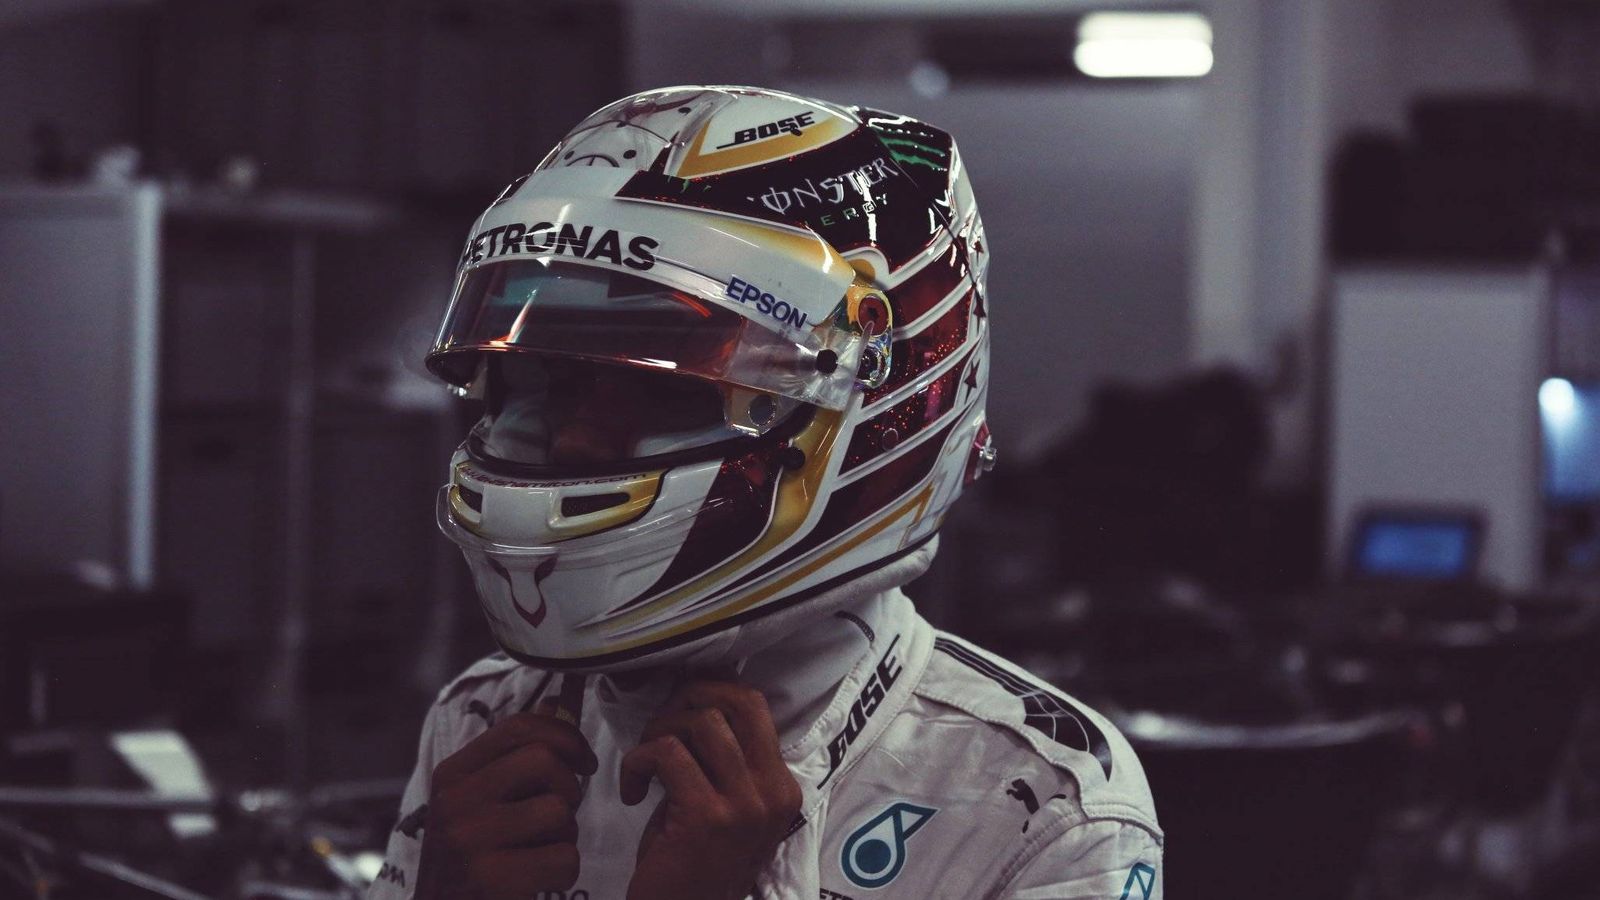 Foto: Lewis Hamilton antes de saltar a la pista.